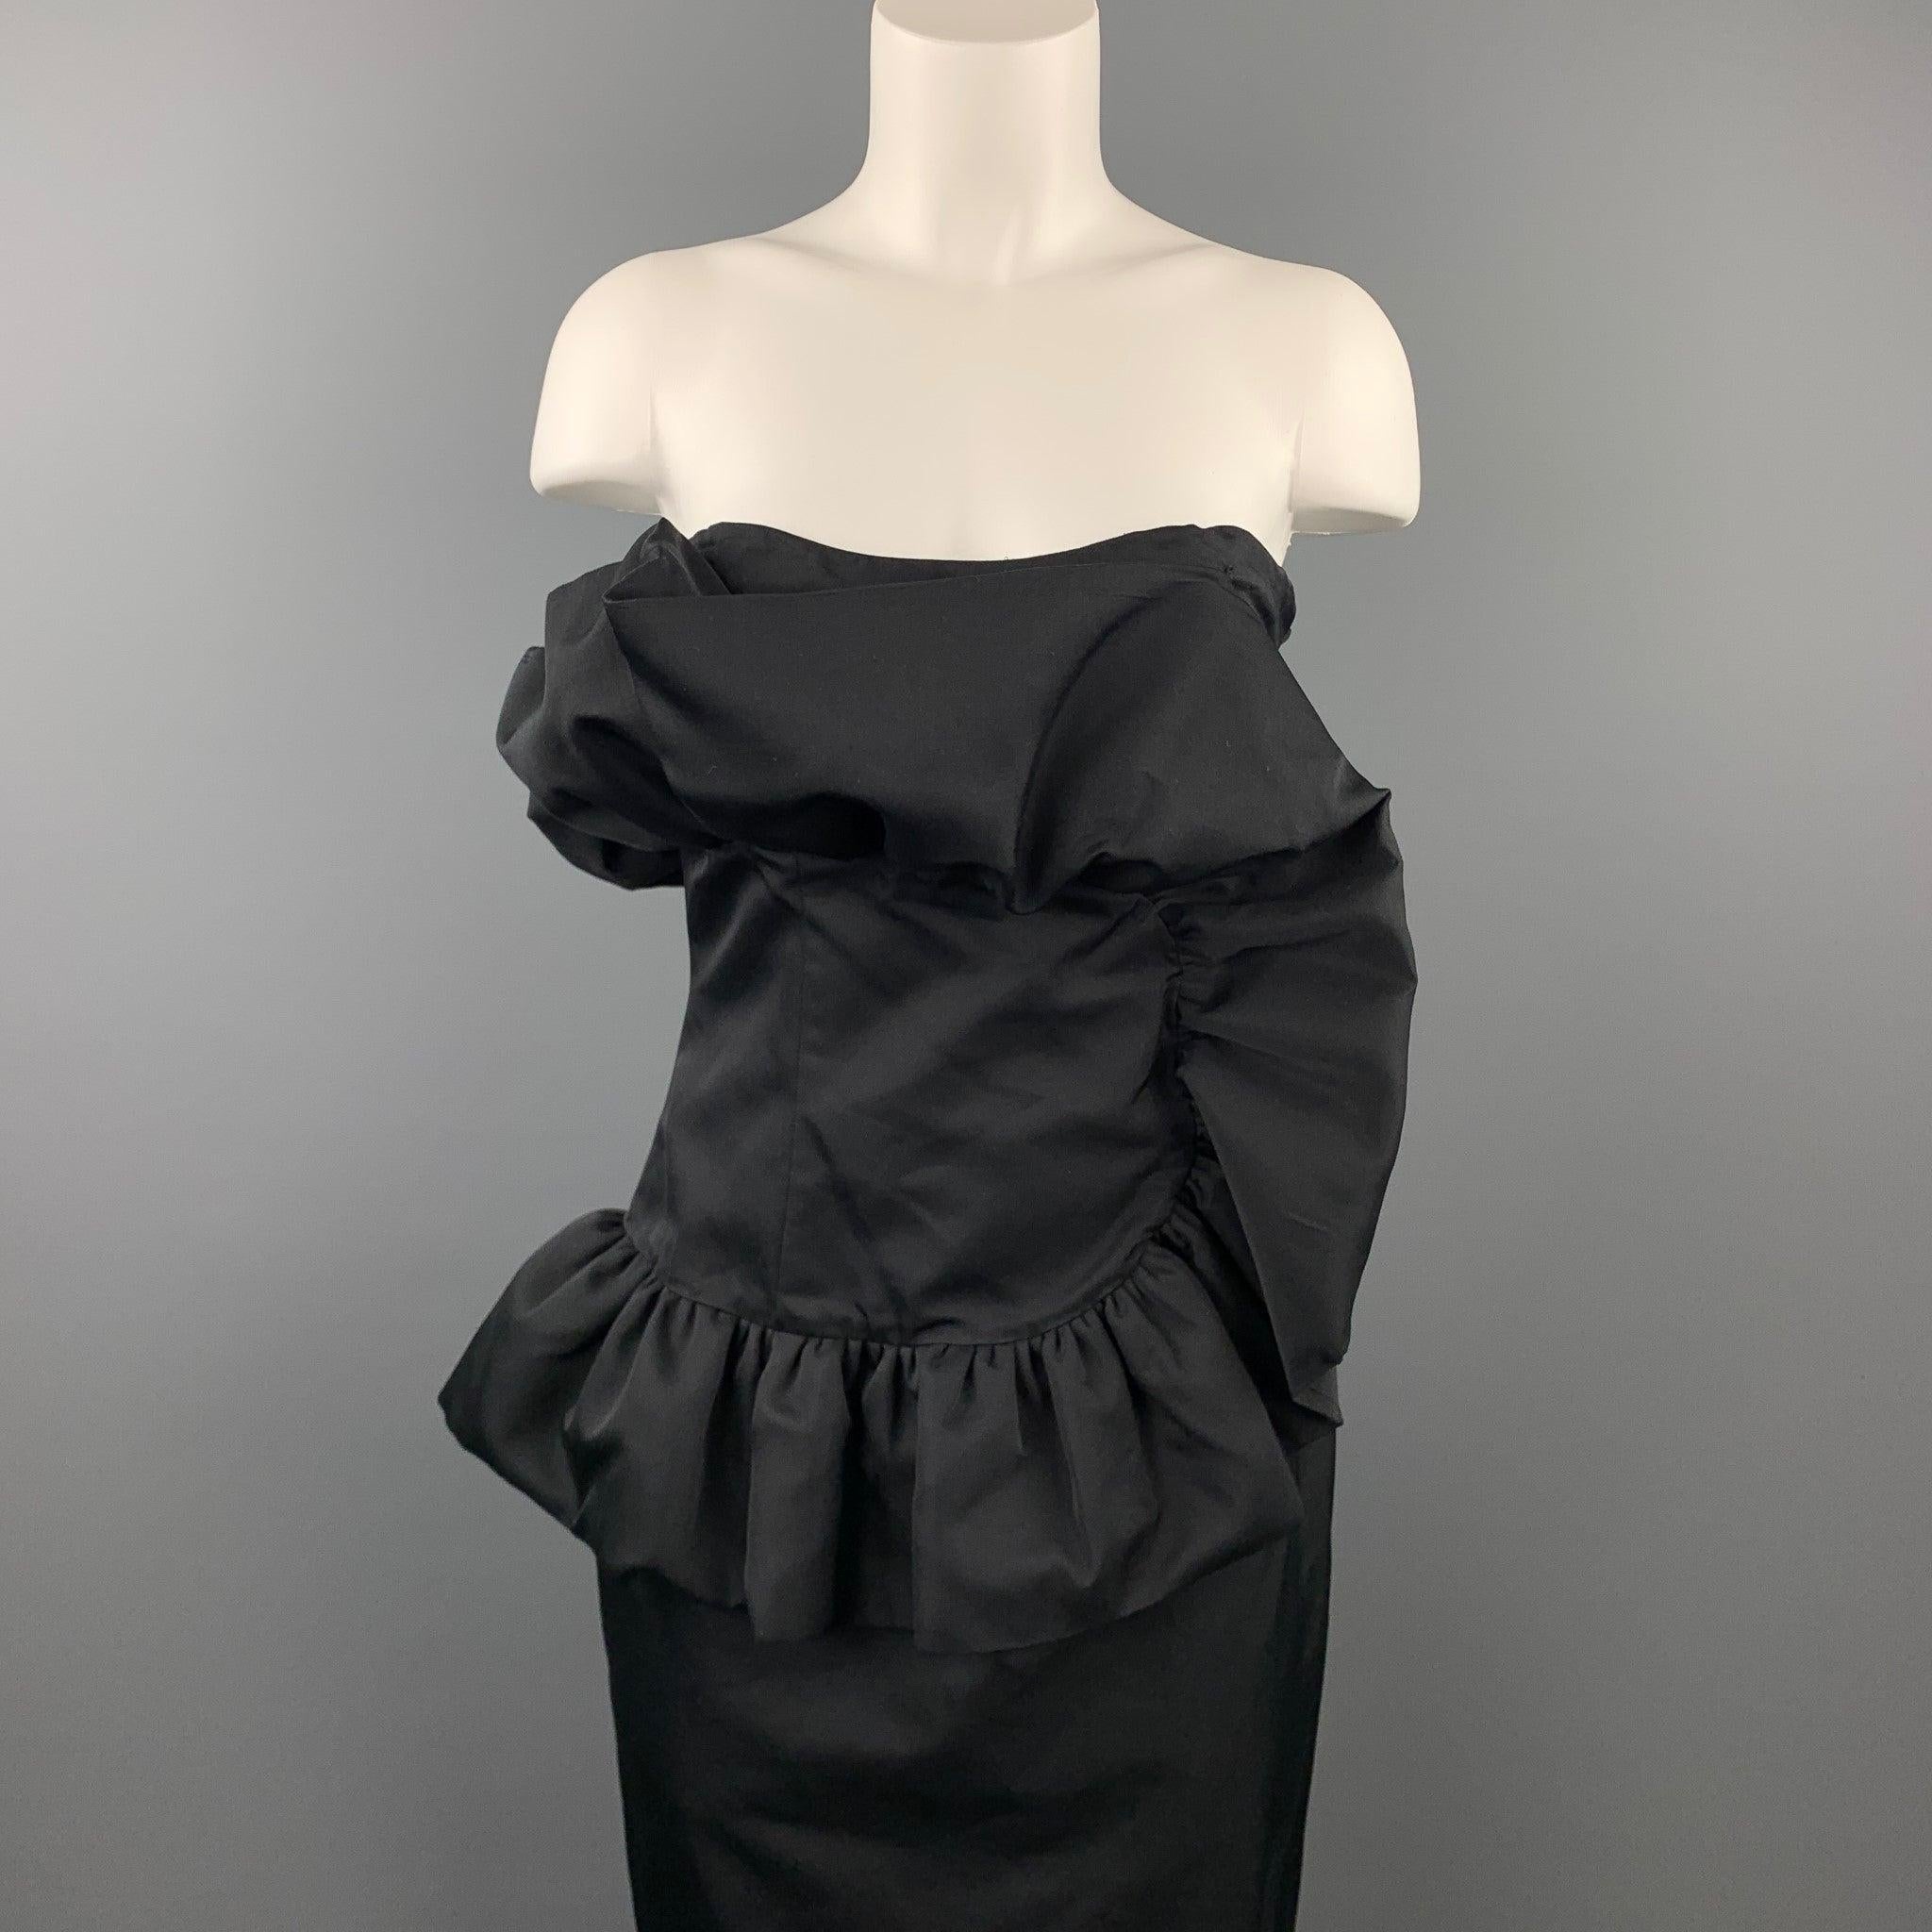 La robe bustier GIAMBATTISTA VALLI se présente dans un coton/soie noir avec un motif à volants, un corset intérieur et une fermeture à glissière sur le côté. Tel quel. Fabriqué en Italie. Bon état d'usage. 

Marqué :  44/M 

Mesures : 
 Poitrine :